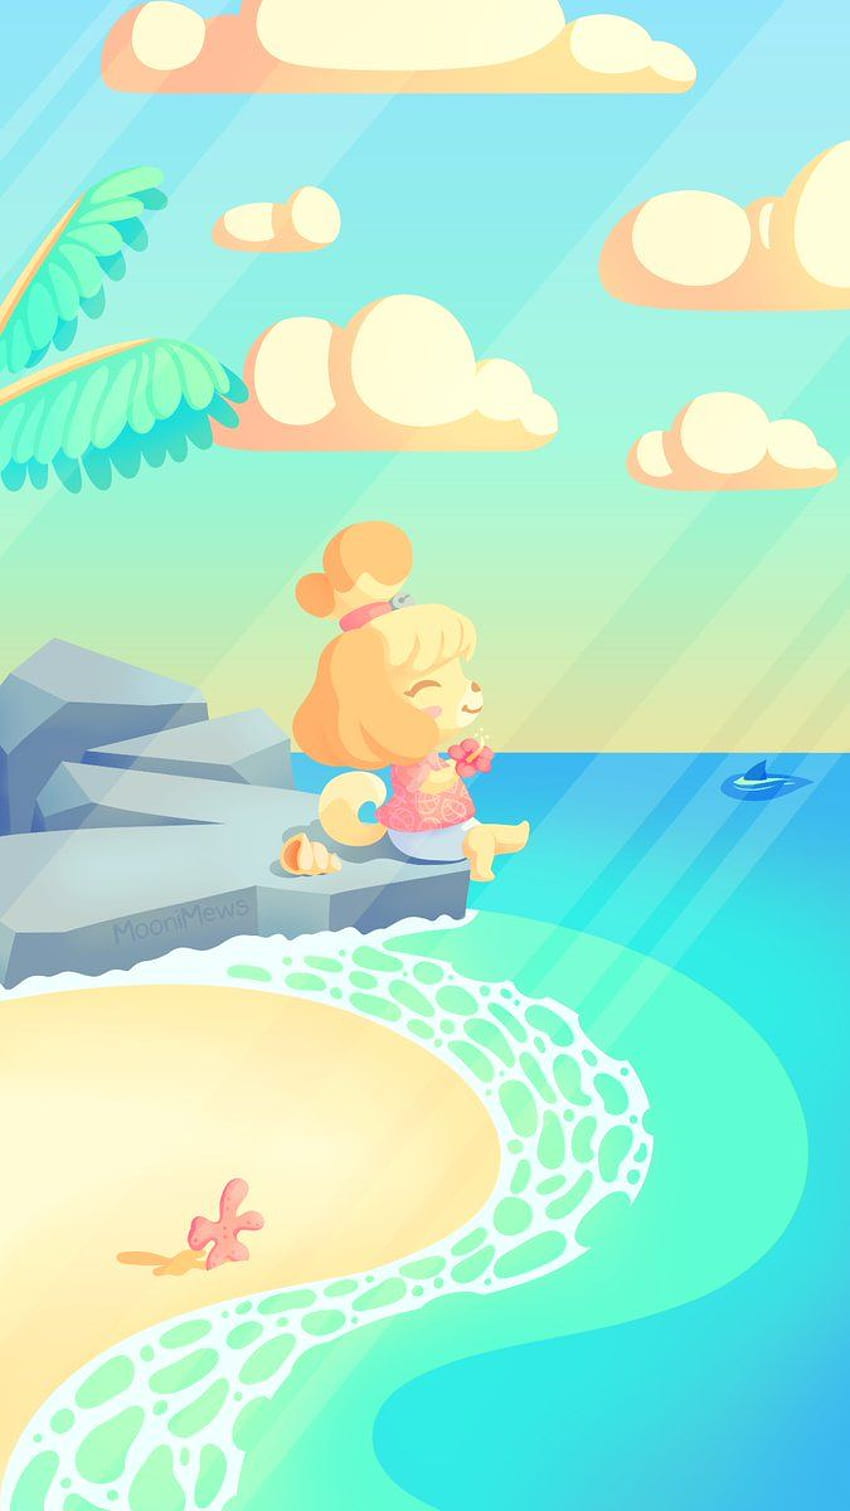 MooniMews. bIm - Ponsel Animal Crossing New Horizons yang saya buat untuk memberi Isabelle waktu bersantai sebelum gamenya ada di sini :) wallpaper ponsel HD